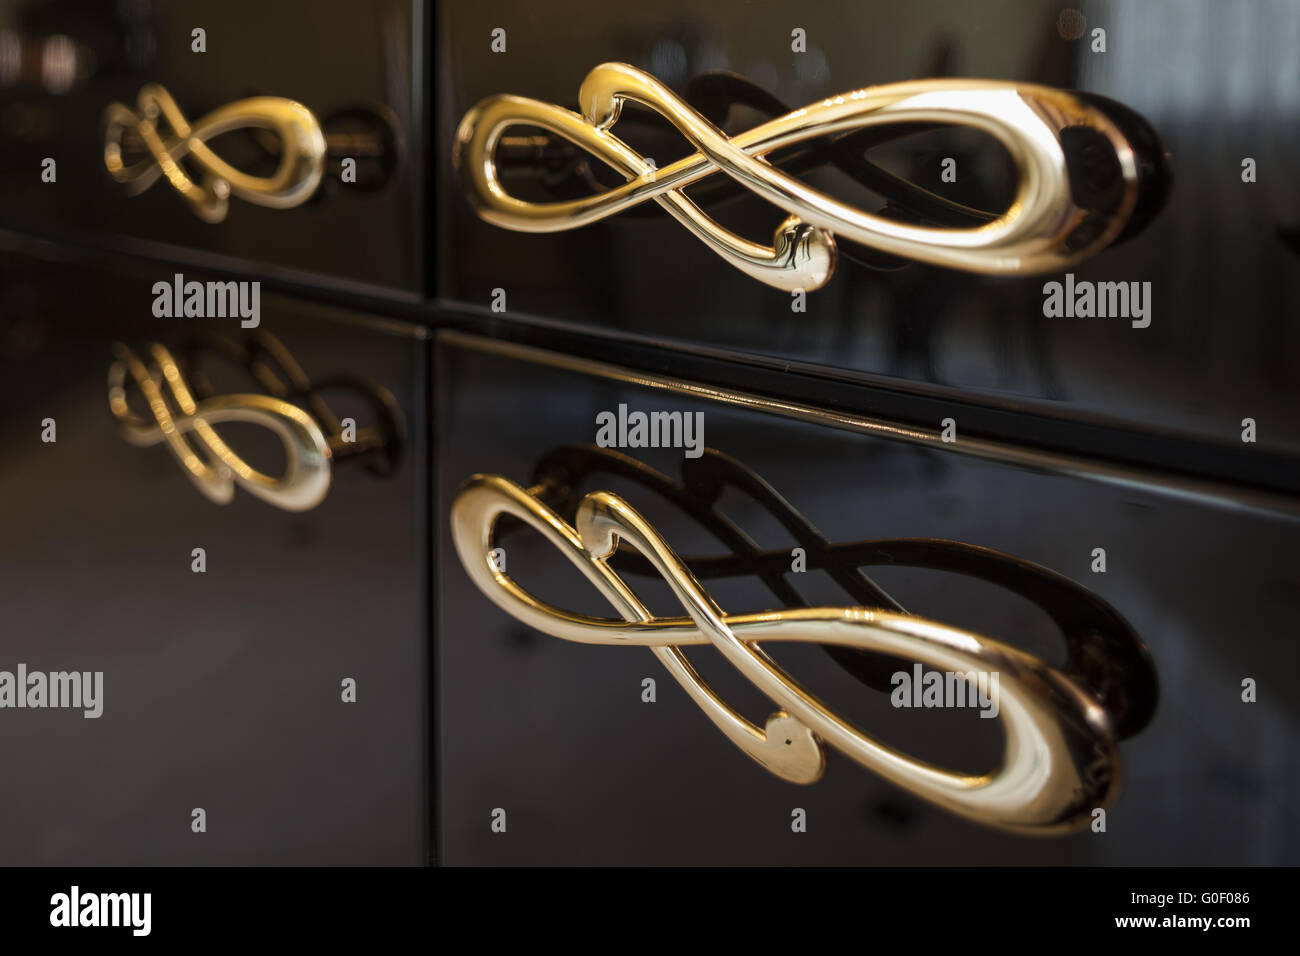 Manijas de muebles fotografías e imágenes de alta resolución - Alamy